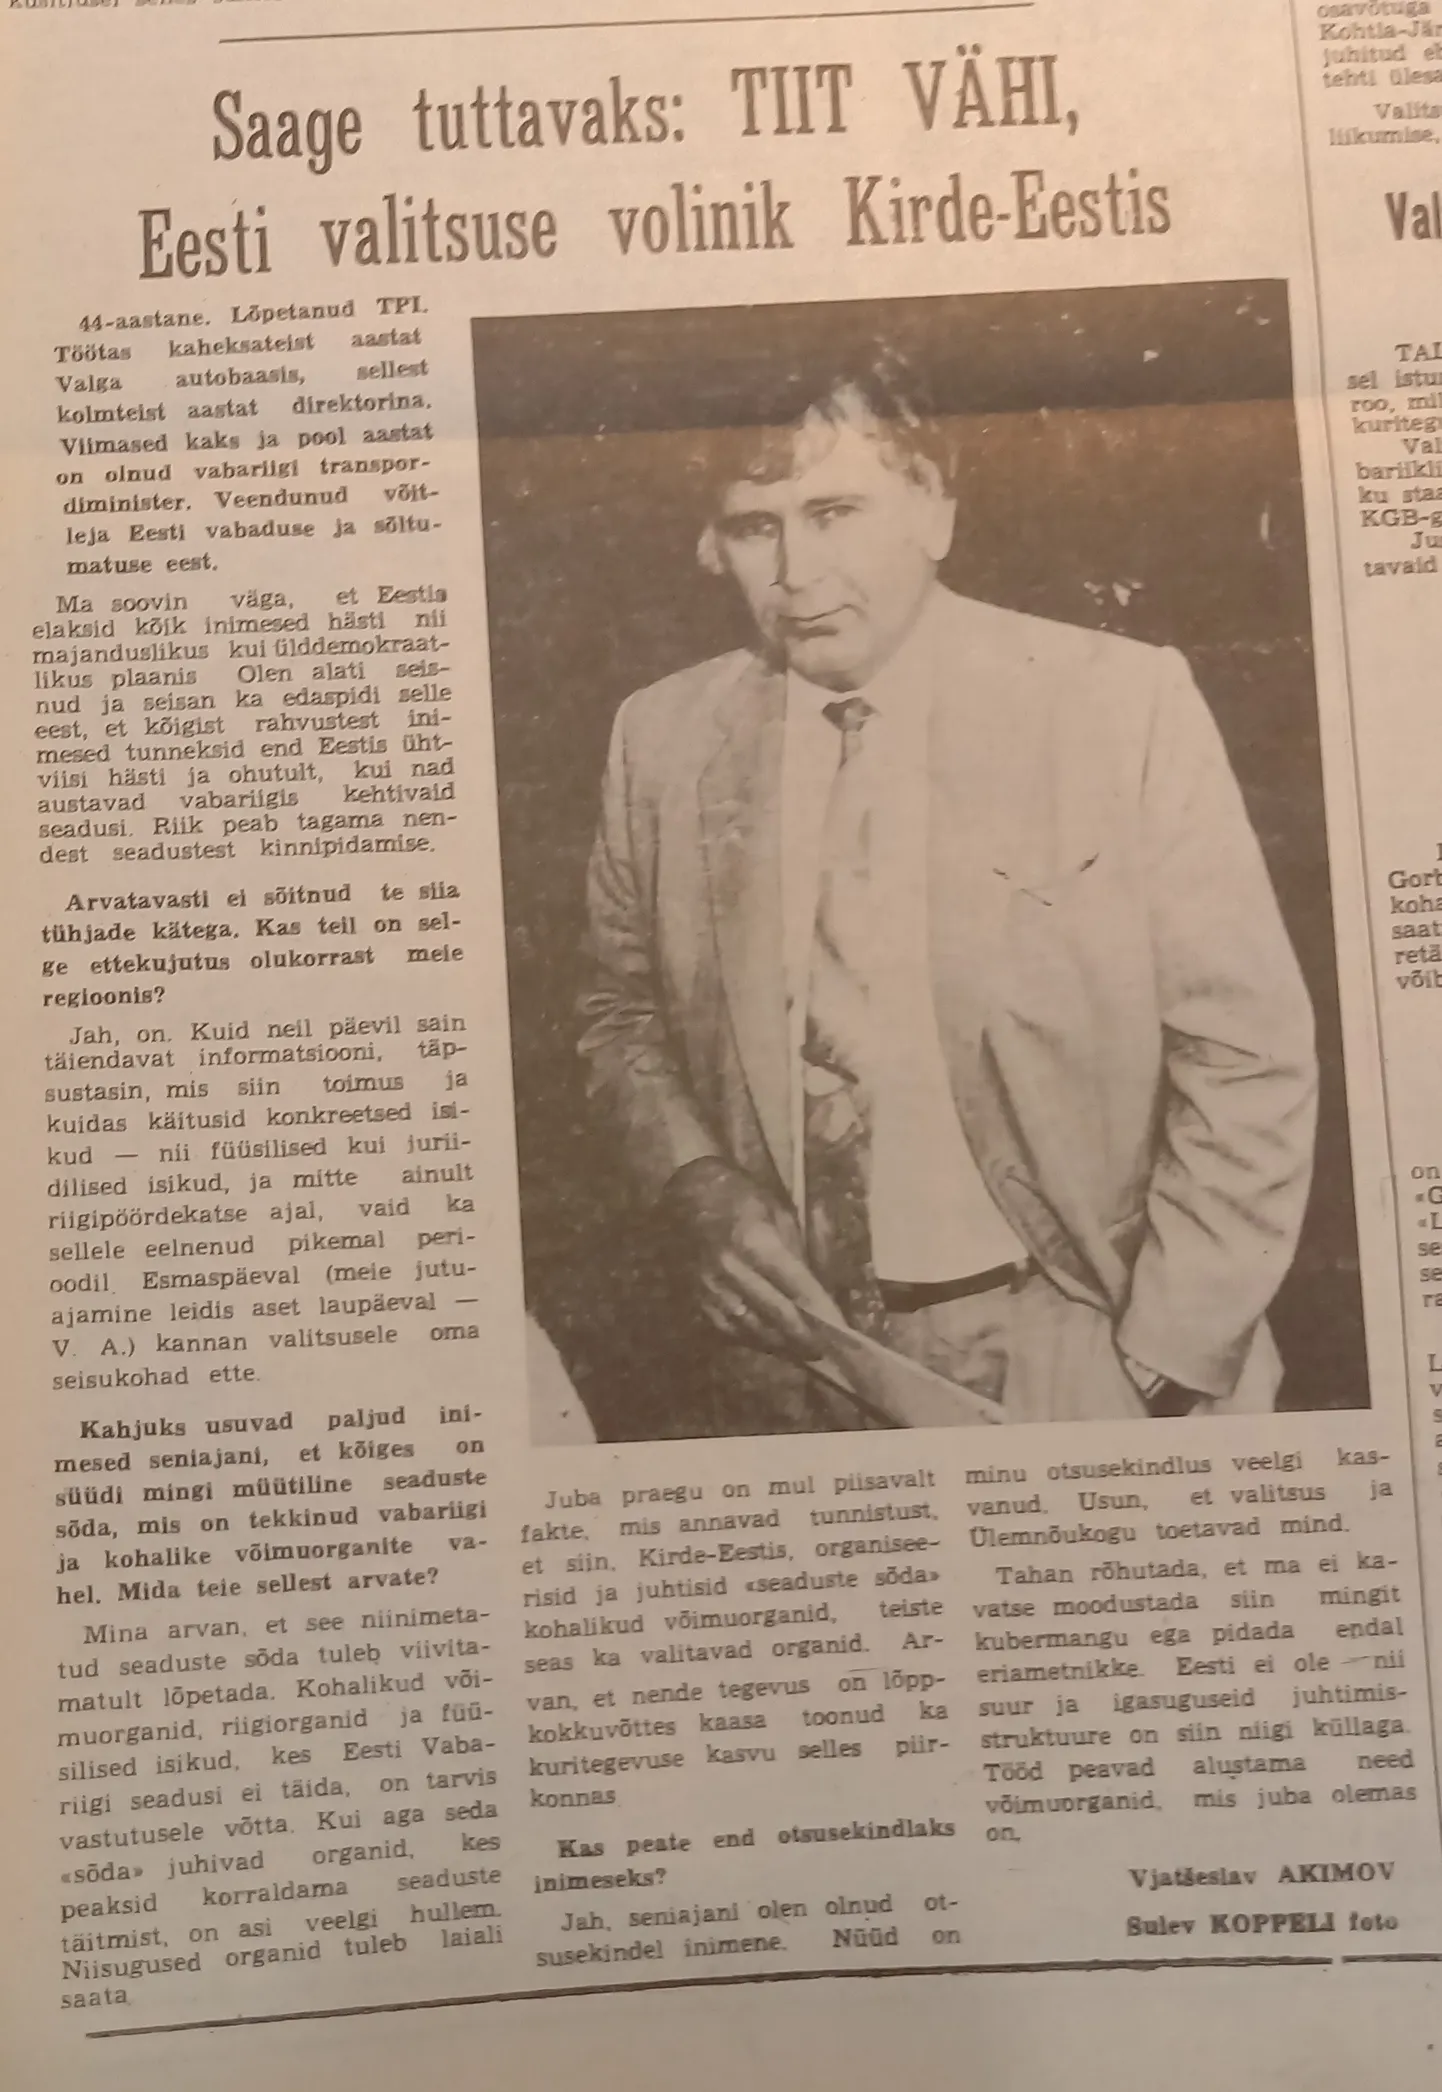 В первом интервью, опубликованном в "Северном побережье" в августе 1991 года, Тийт Вяхи сказал, что такие местные органы власти, которые не исполняют эстонские законы, следует распустить.